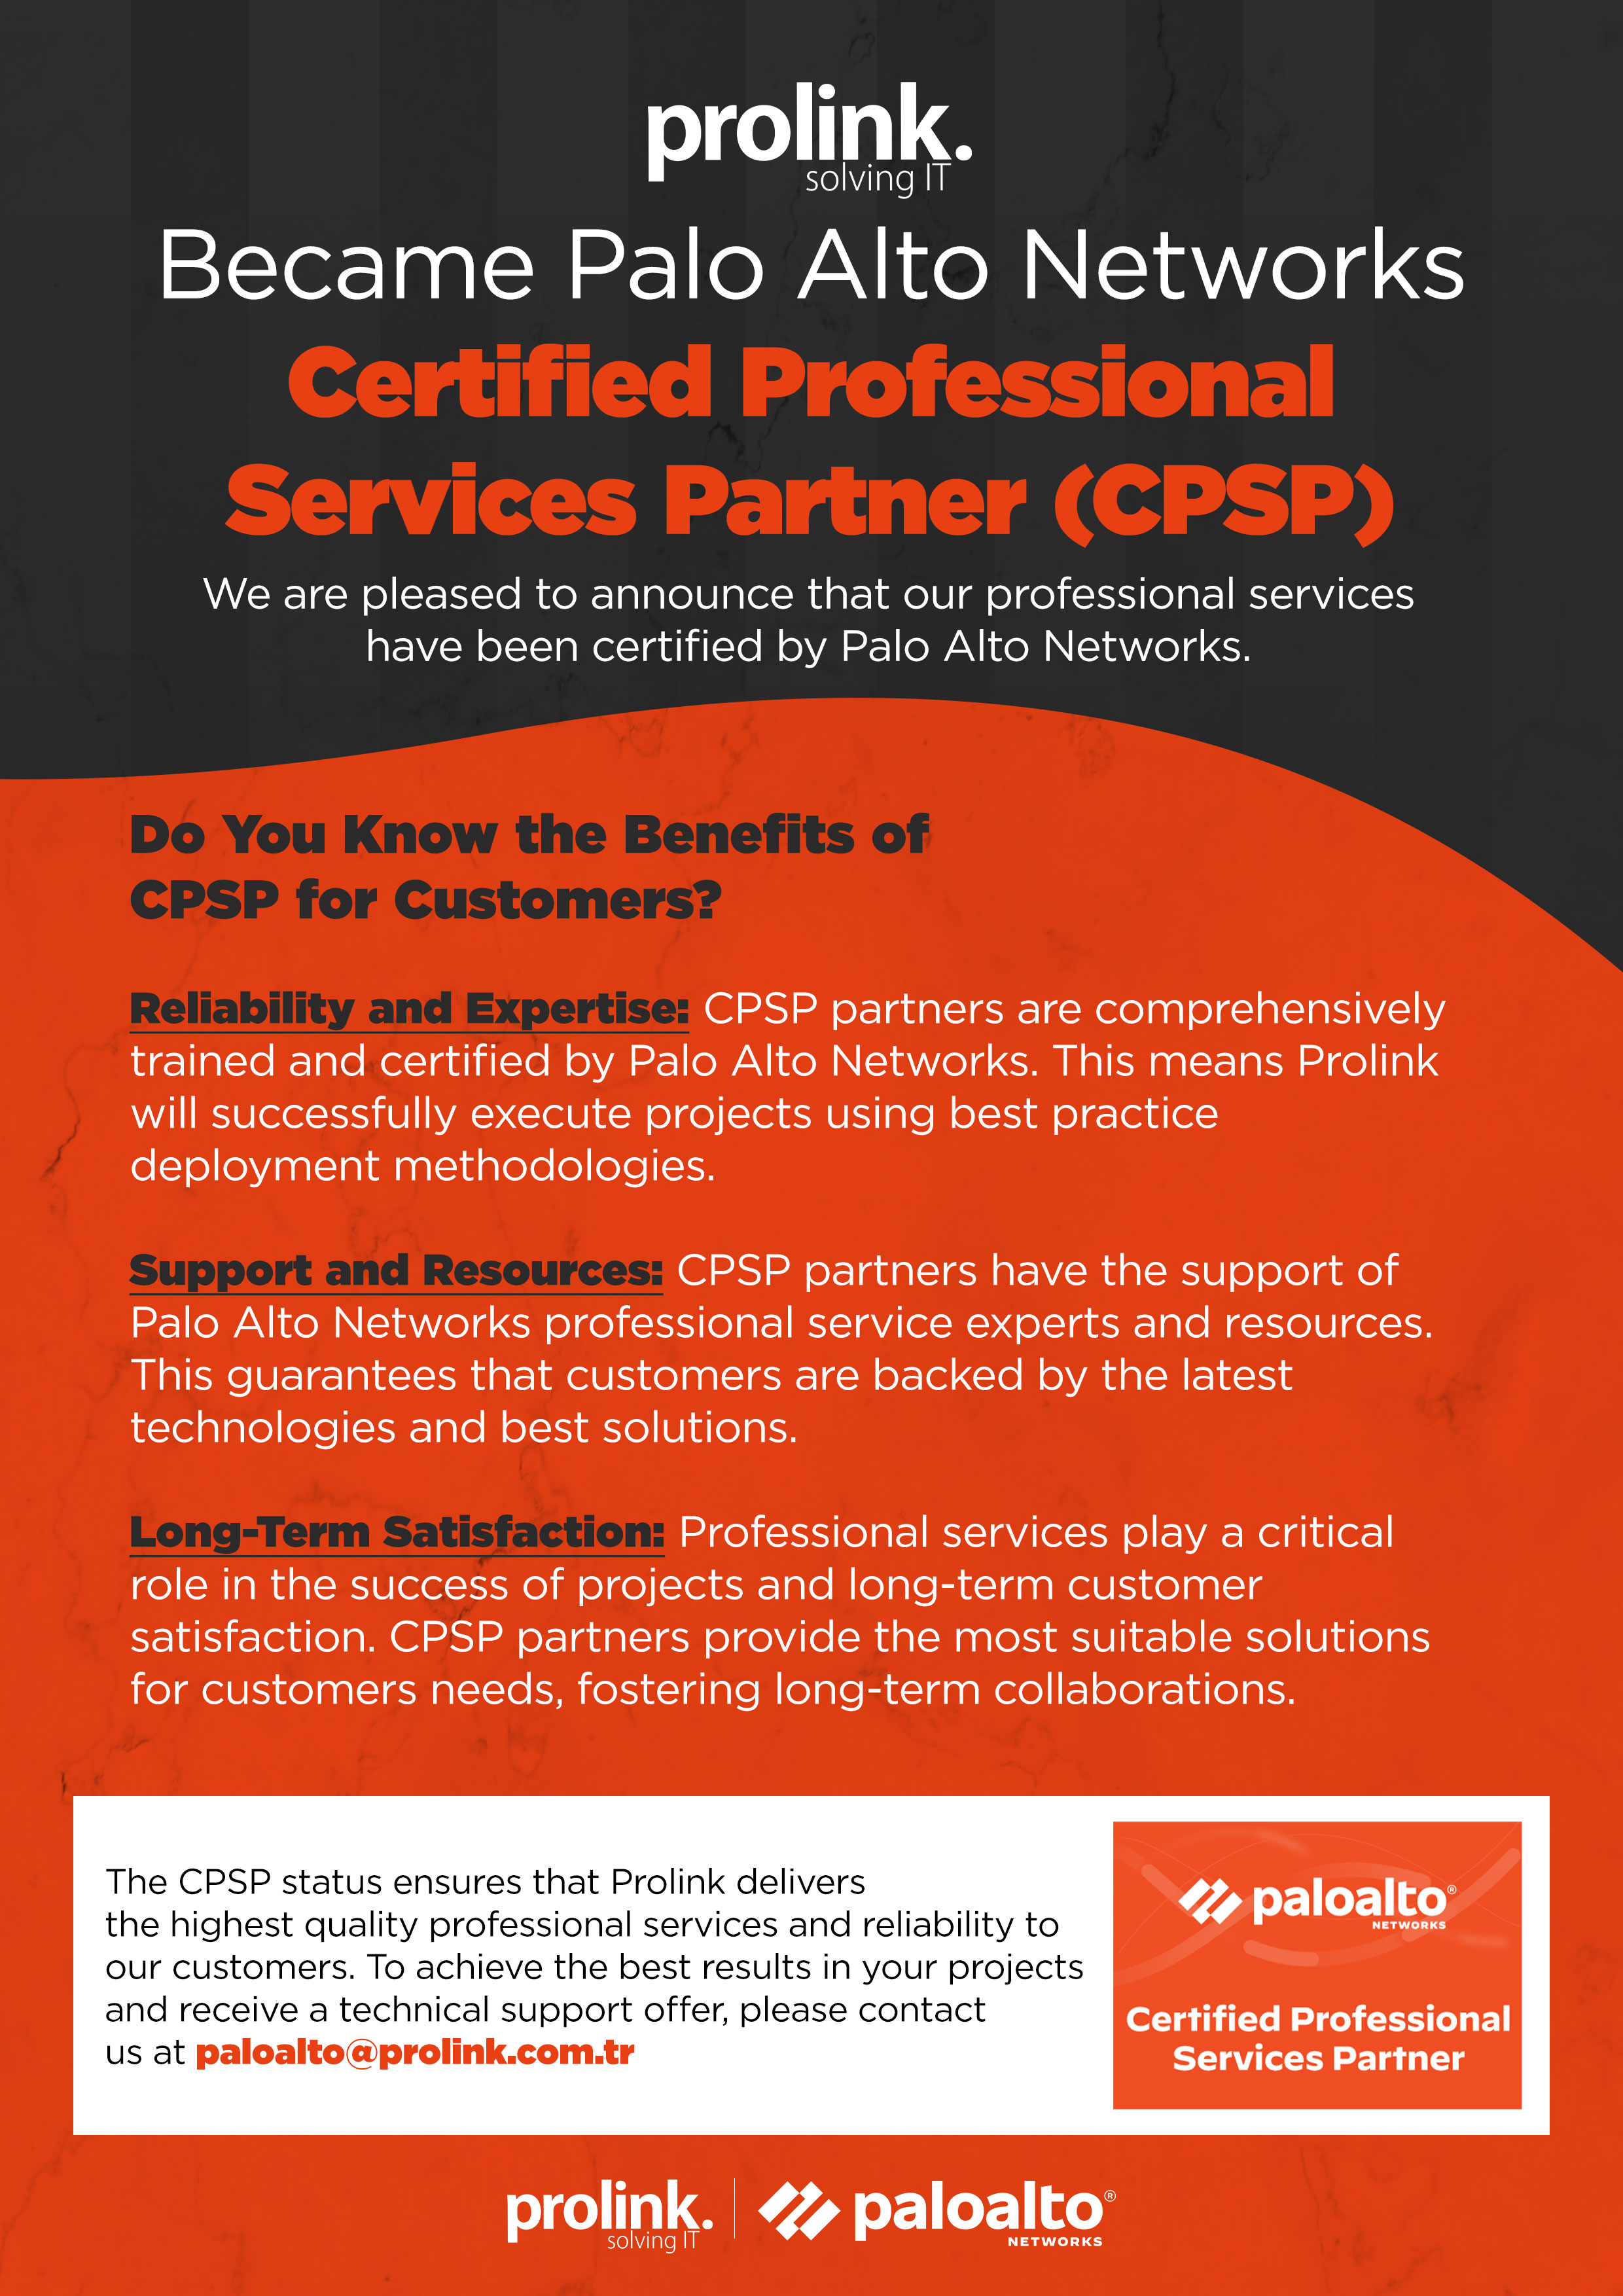 Prolink Became Palo Alto Networks Certified Professional Services Partner